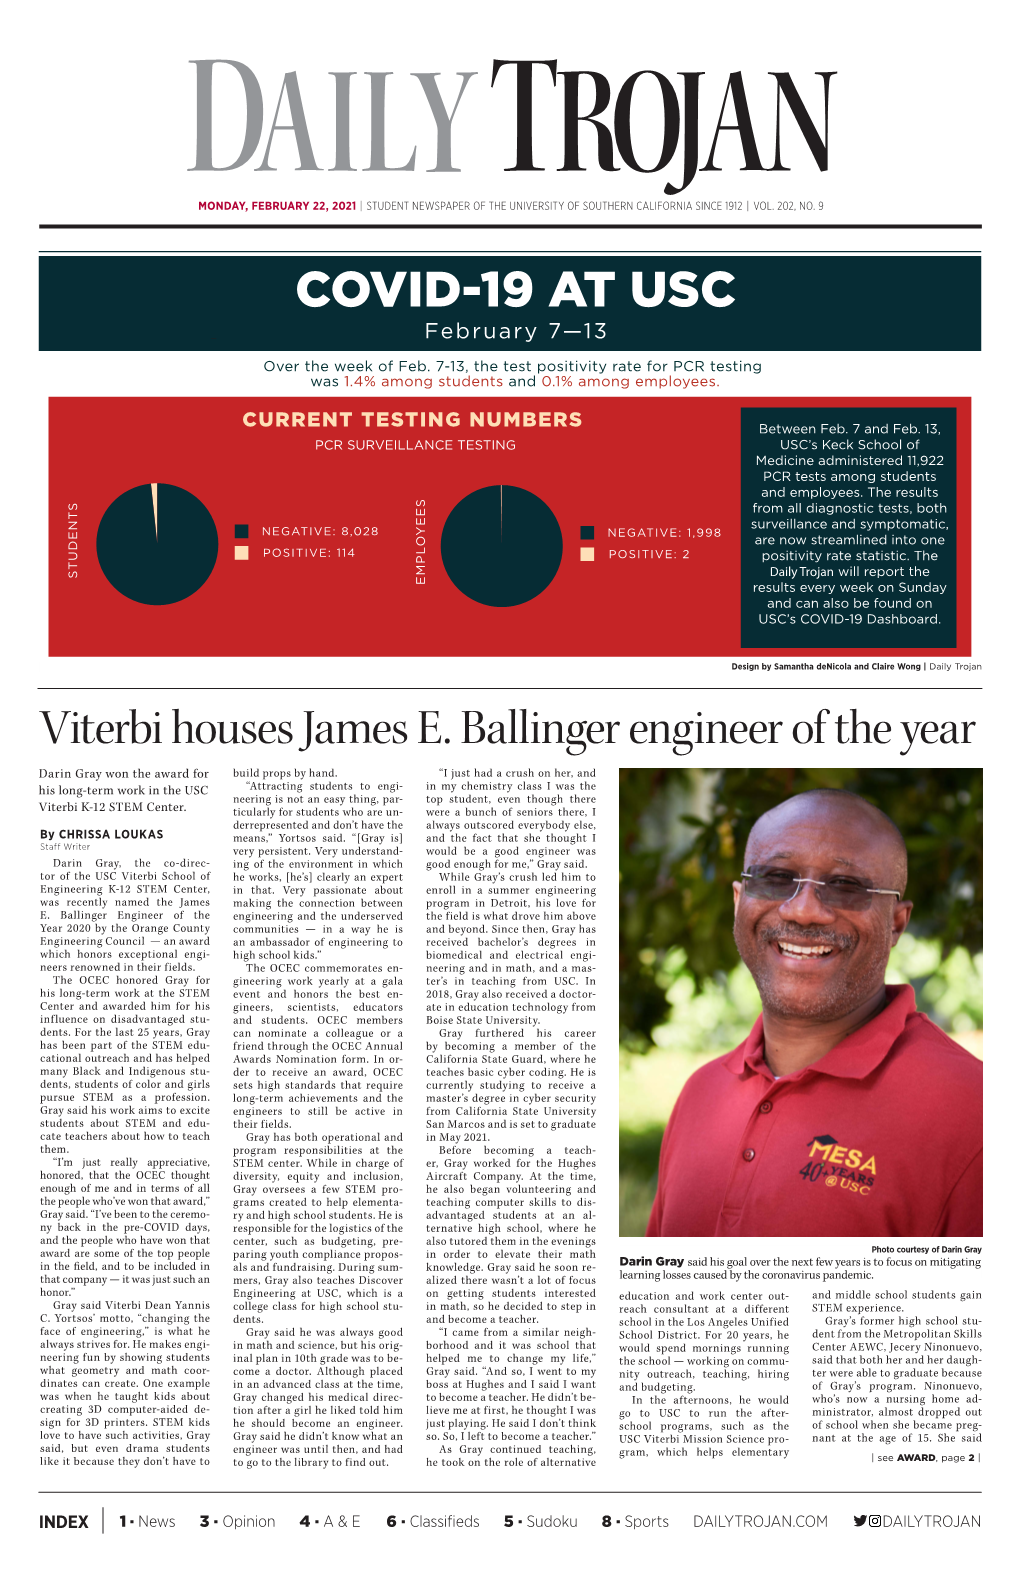 COVID-19 at USC Viterbi Houses James E. Ballinger Engineer of The